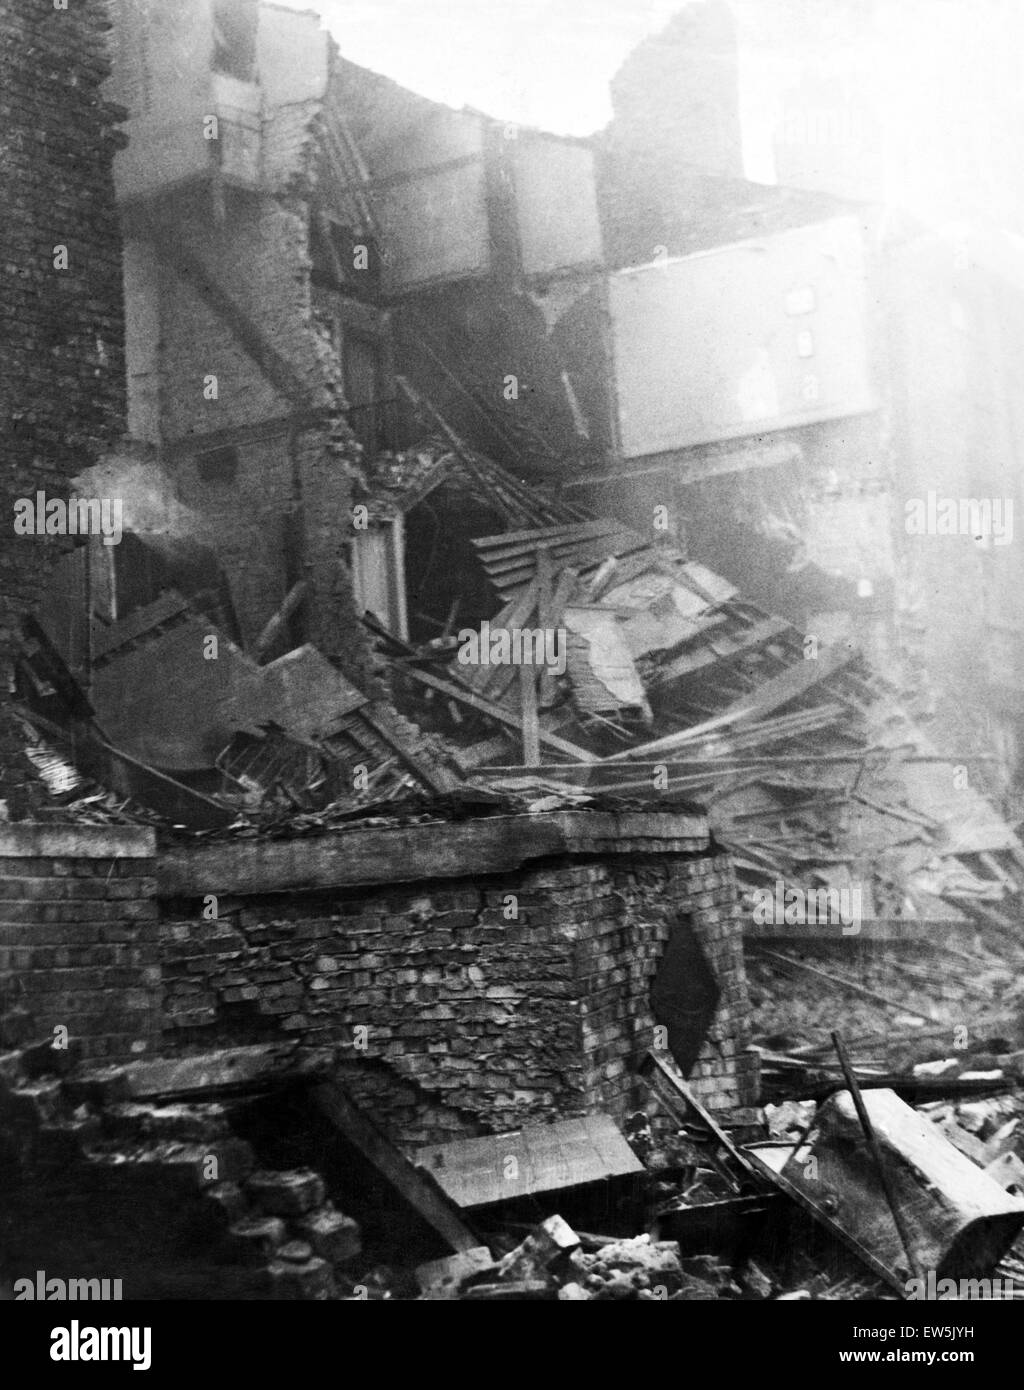 Danni della bomba in alto Canning Street, Liverpool. I rifugi mostrato in primo piano erano solo leggermente danneggiata e i loro occupanti illesi, quando un alto esplosivo bomba case danneggiate convertito in appartamenti durante un raid su 27 Ottobre 1940. 28 ottobre 194 Foto Stock